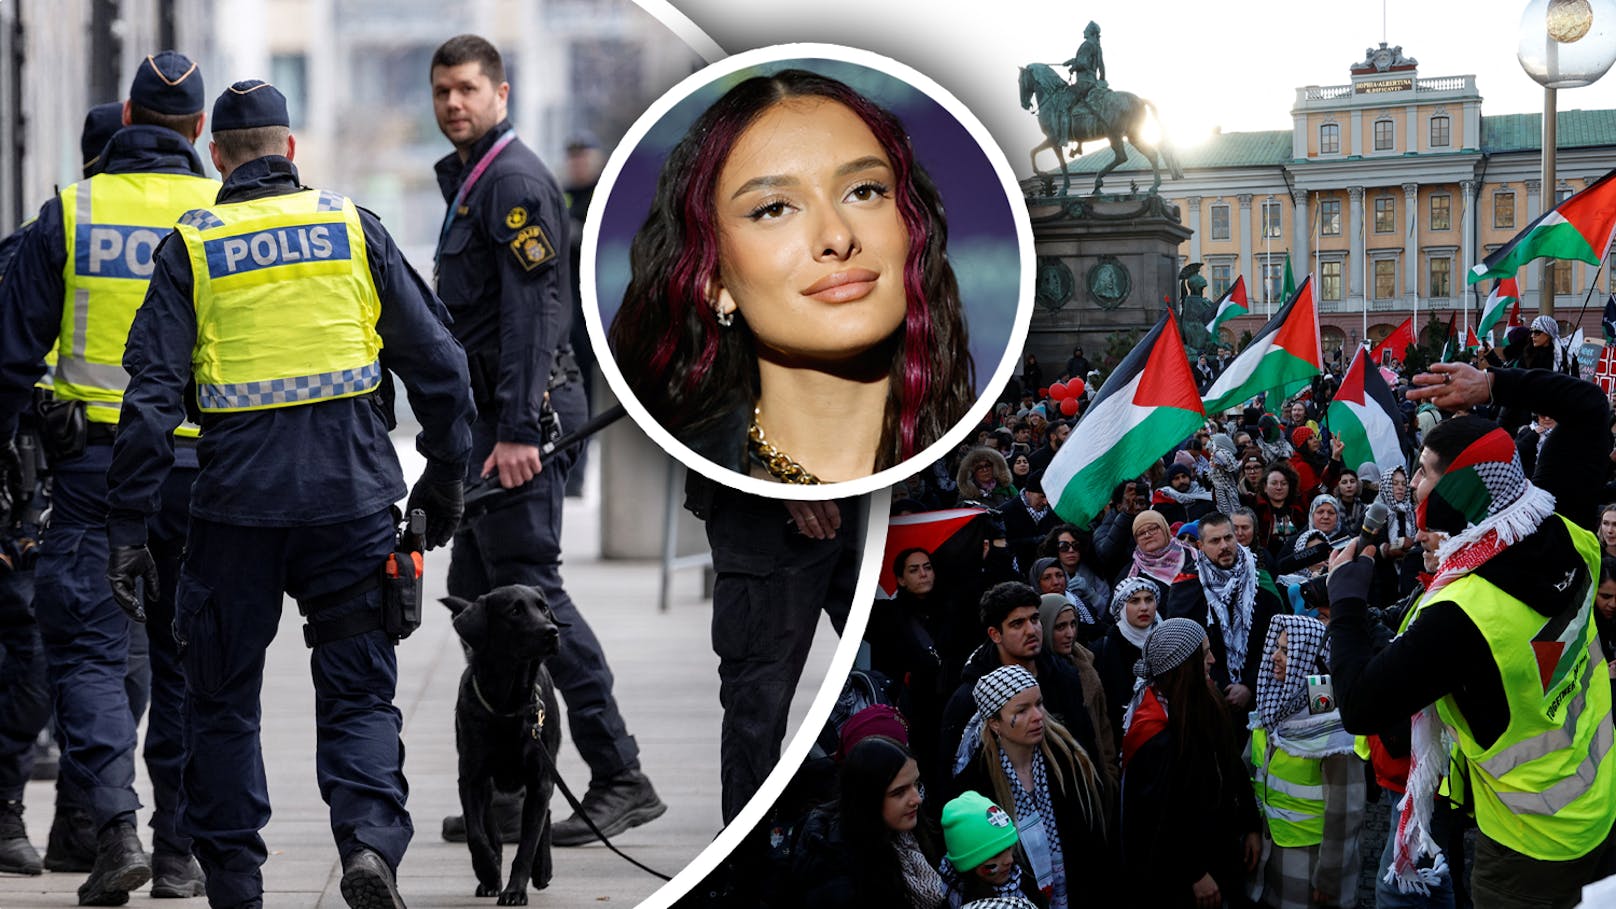 "Große Polizeipräsenz": Demos wegen Israel beim ESC